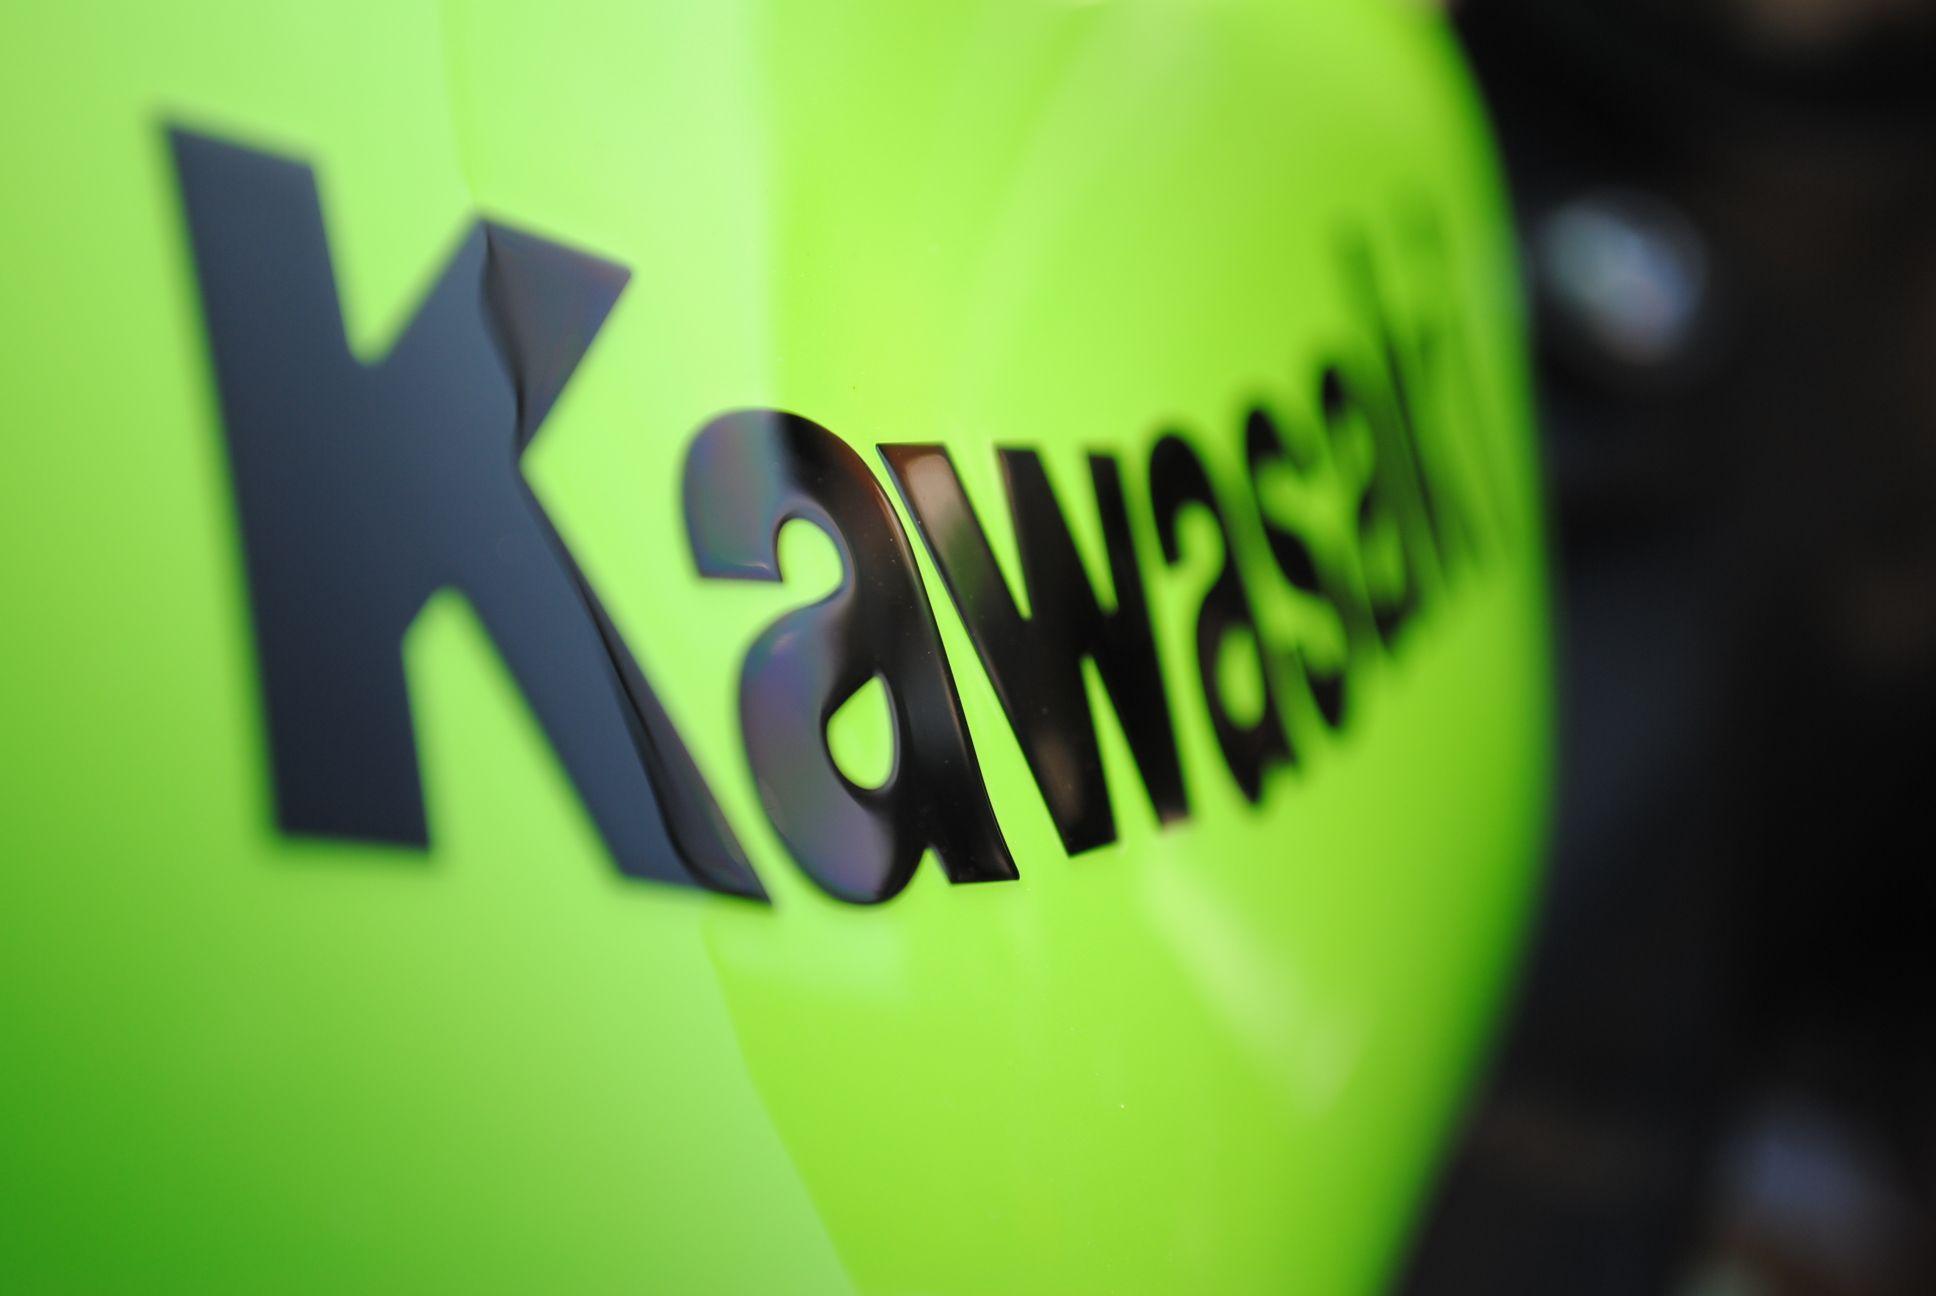 Kawasaki Logo 22844 1936x1296 px